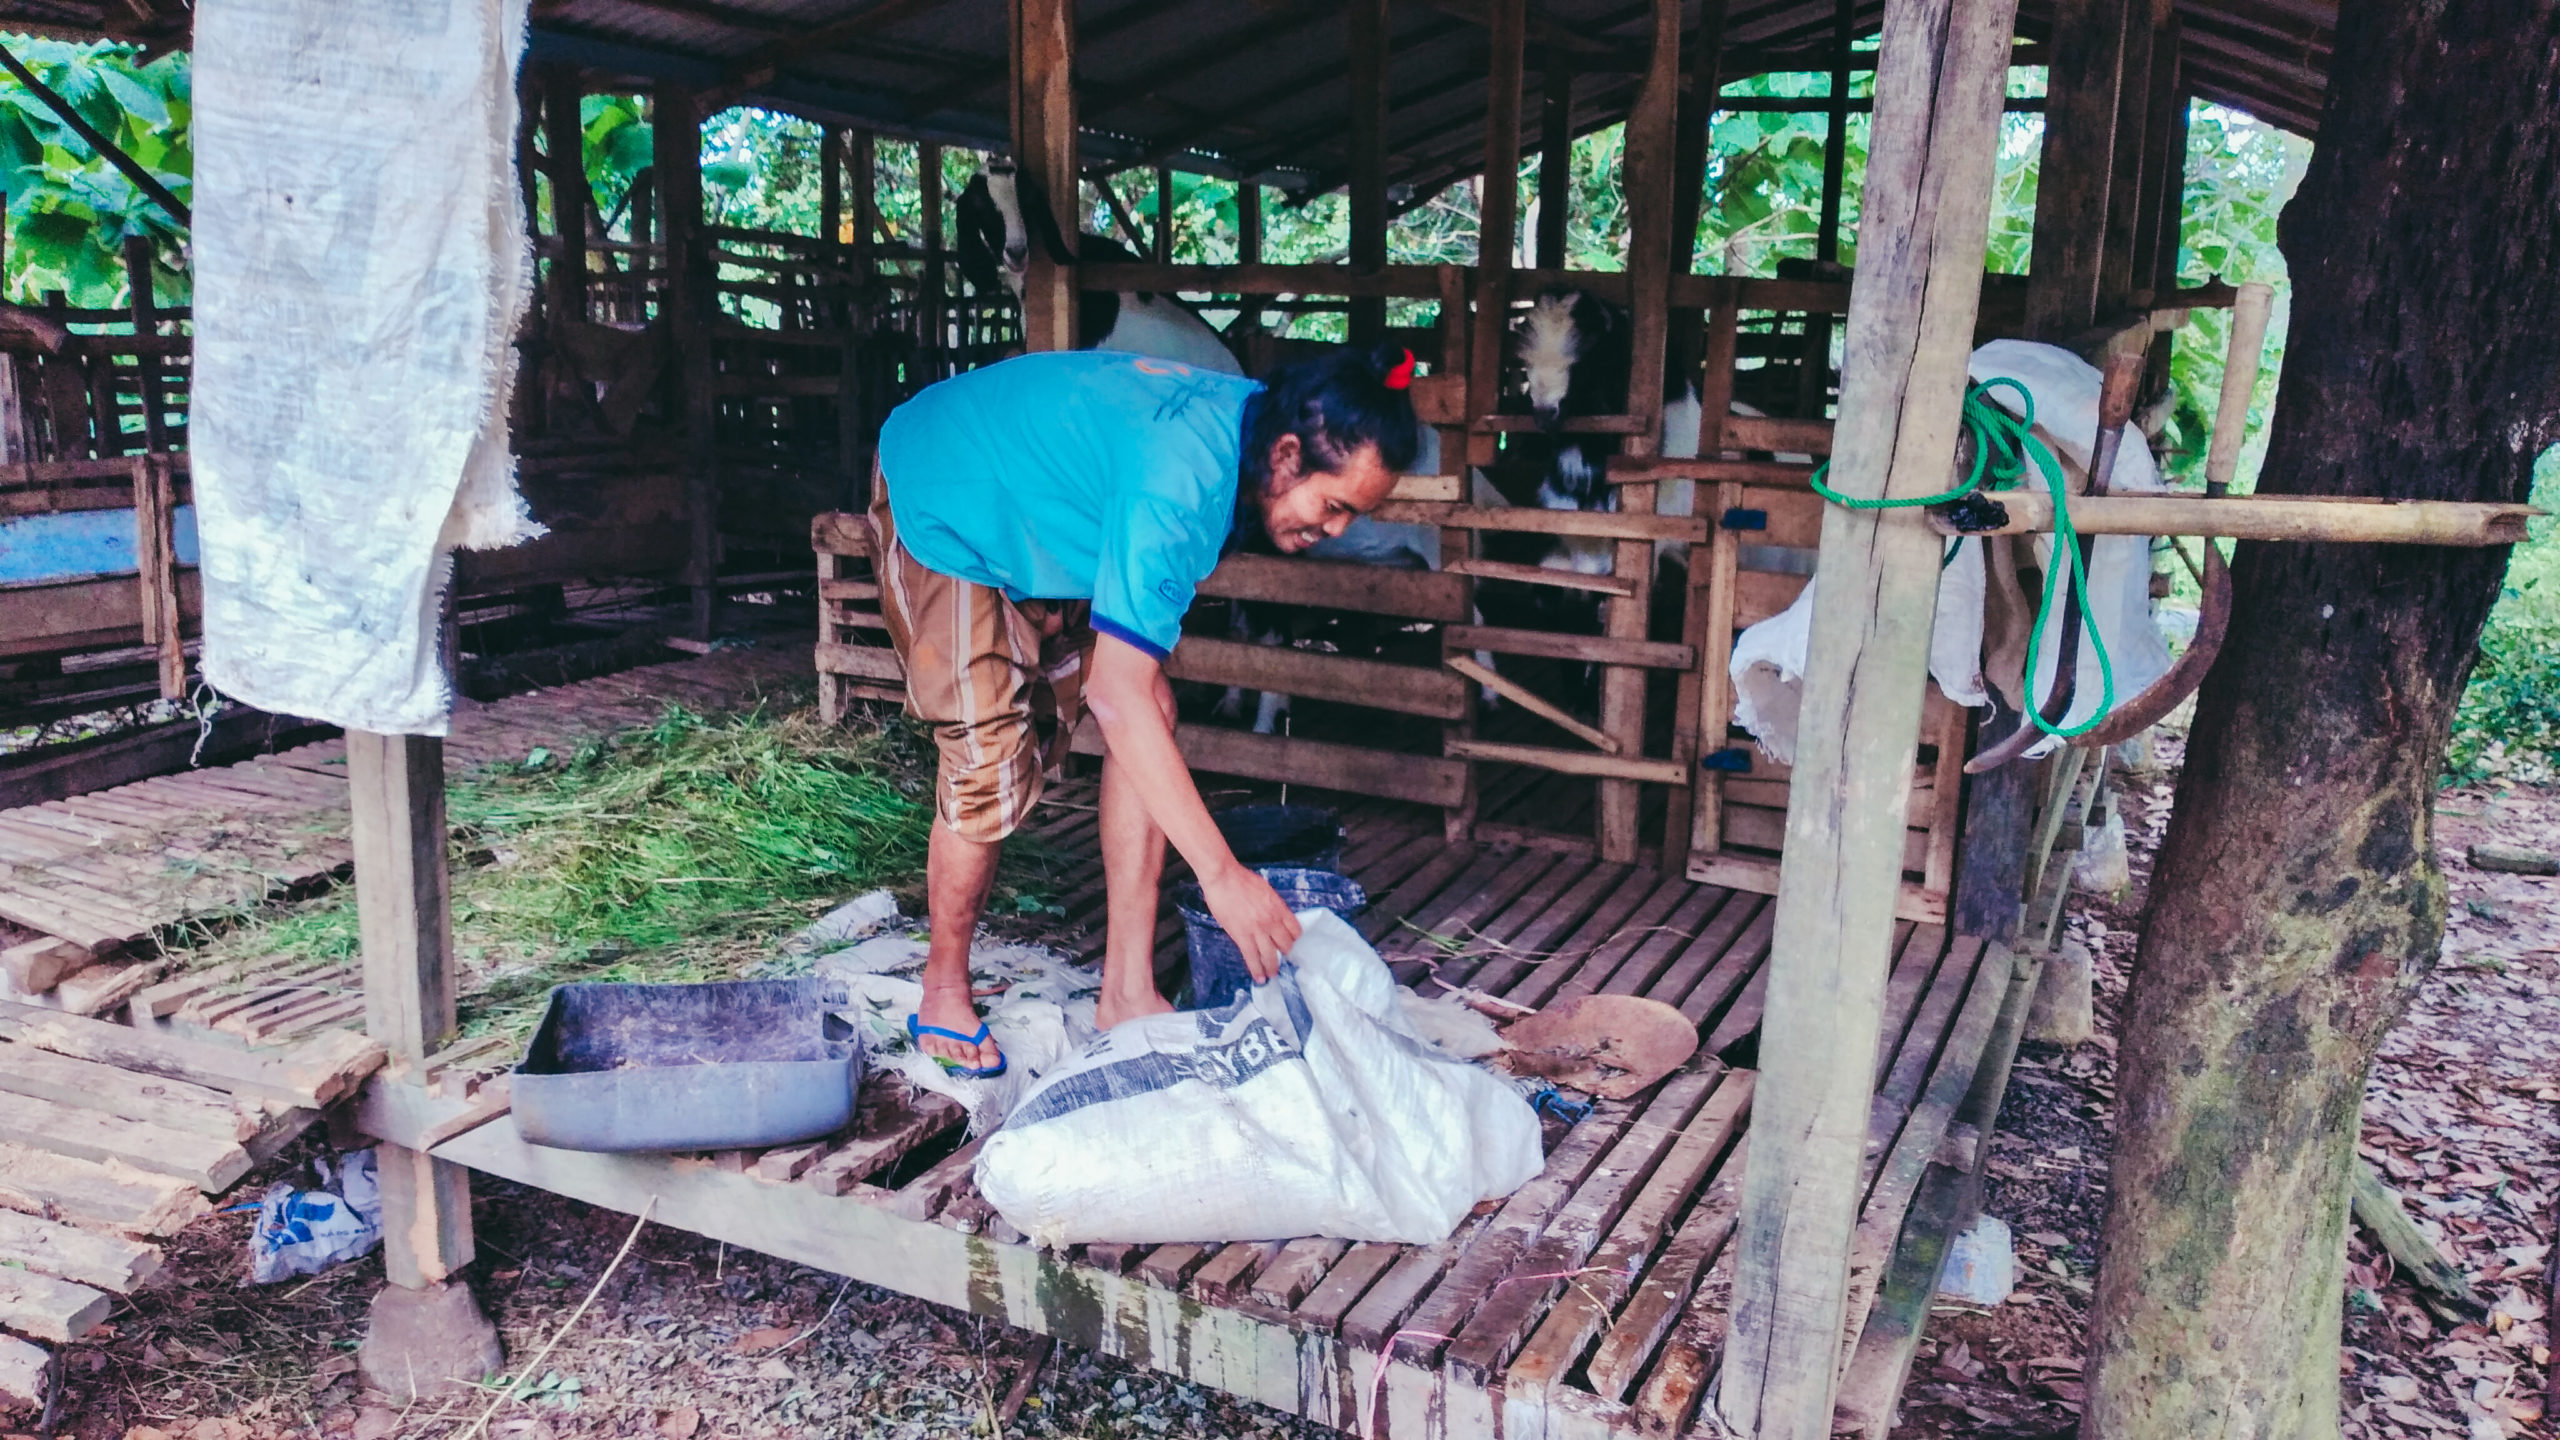 Homaidy, langsung merawat kambing untuk diambil air susunya. Foto: Moh Tamimi/ Mongabay Indonesia